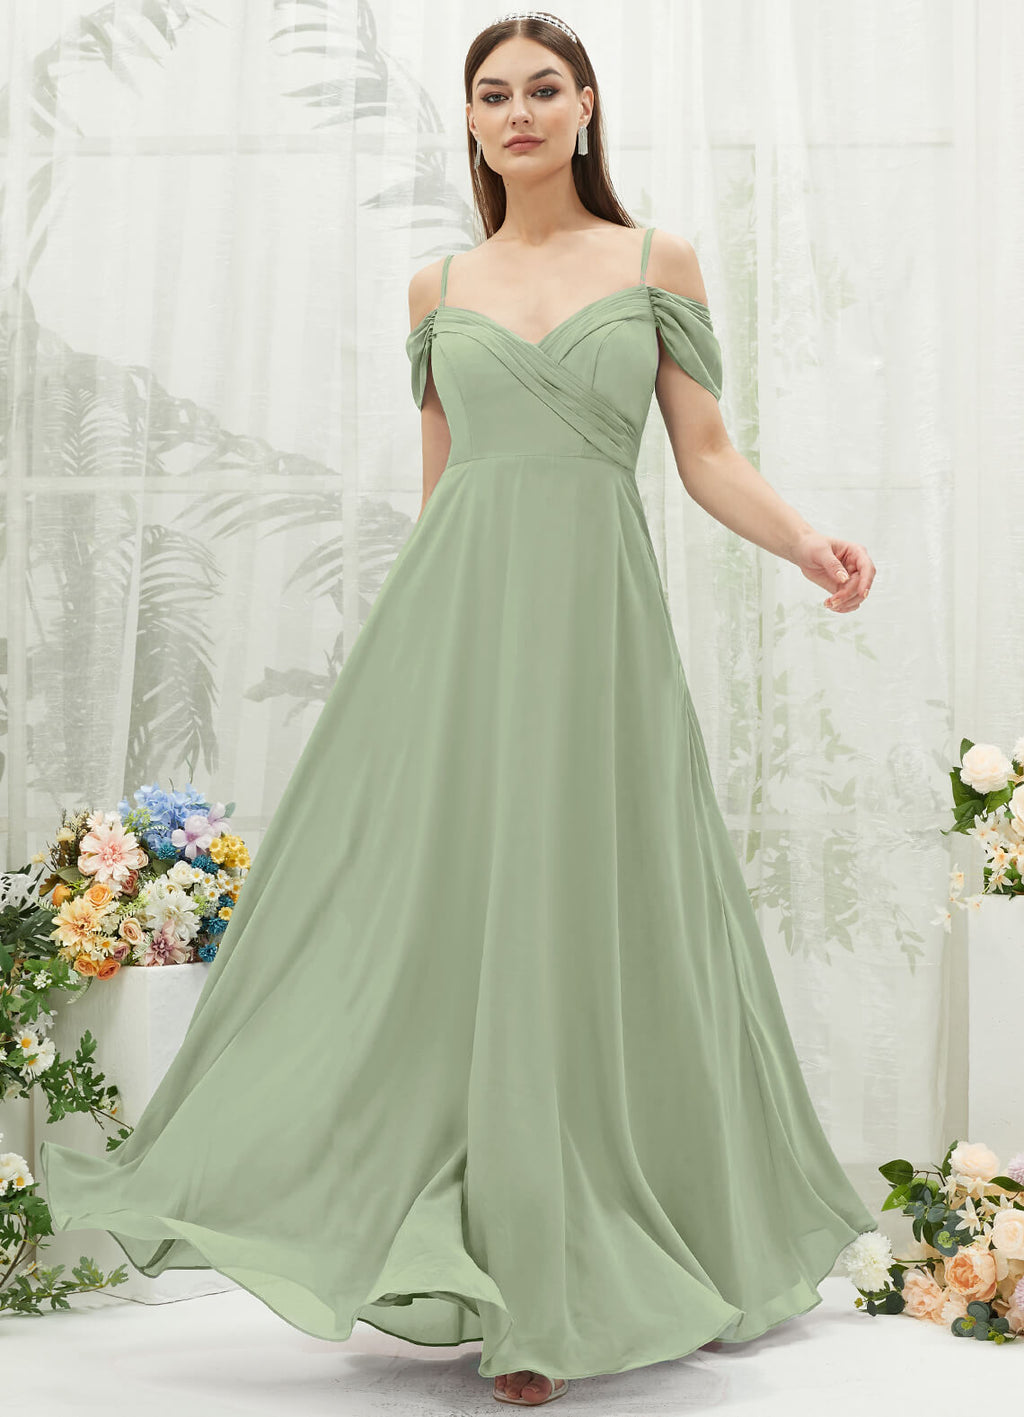 NZ Bridal Sage Green Convertible Chiffon Maxi Bridesmaid Dress BG30217 Spence a